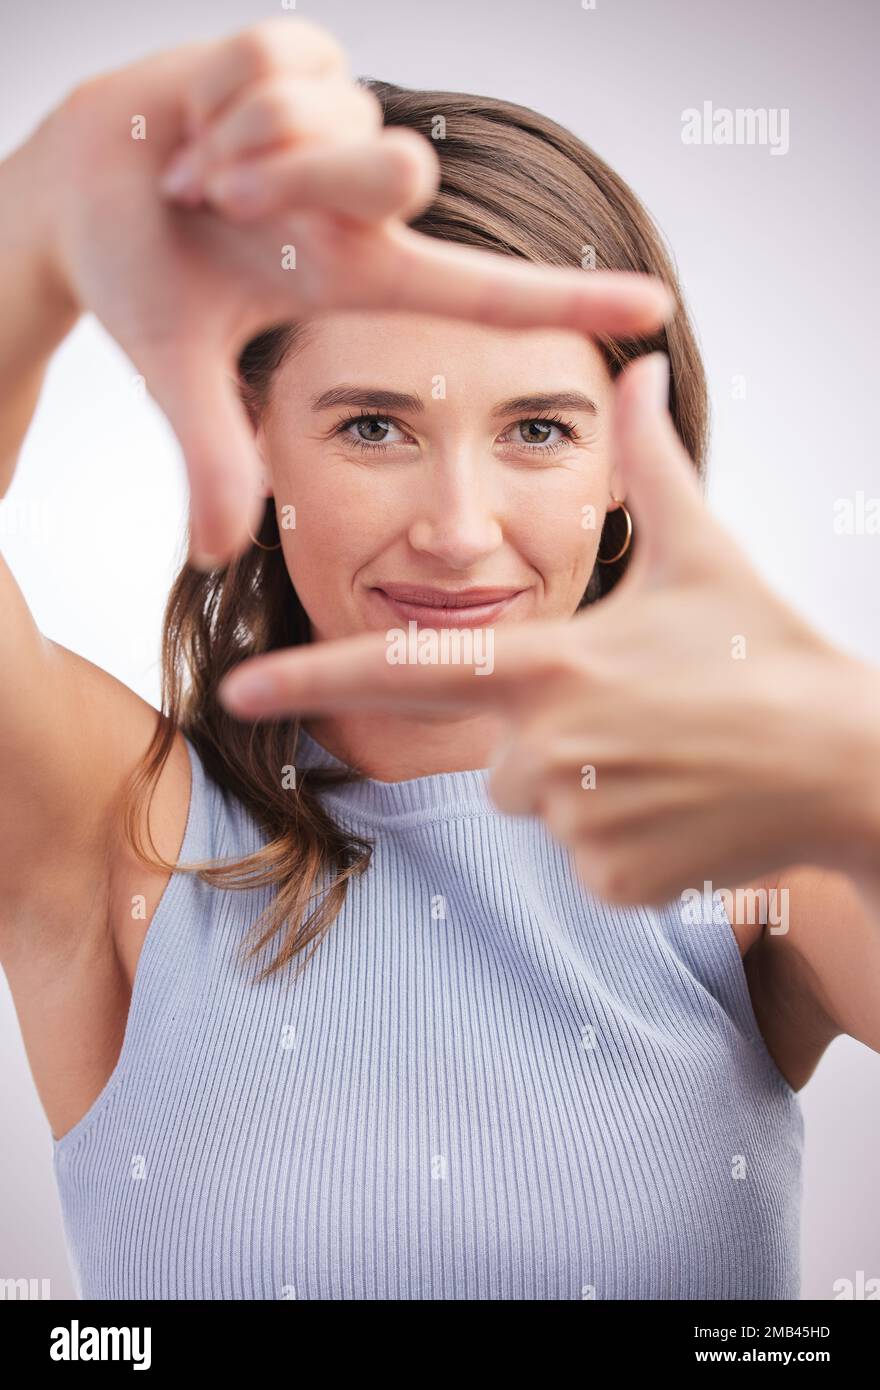 Halte die perfekte Pose für mich. Studioporträt einer jungen Frau, die einen Finger vor grauem Hintergrund umrahmt. Stockfoto